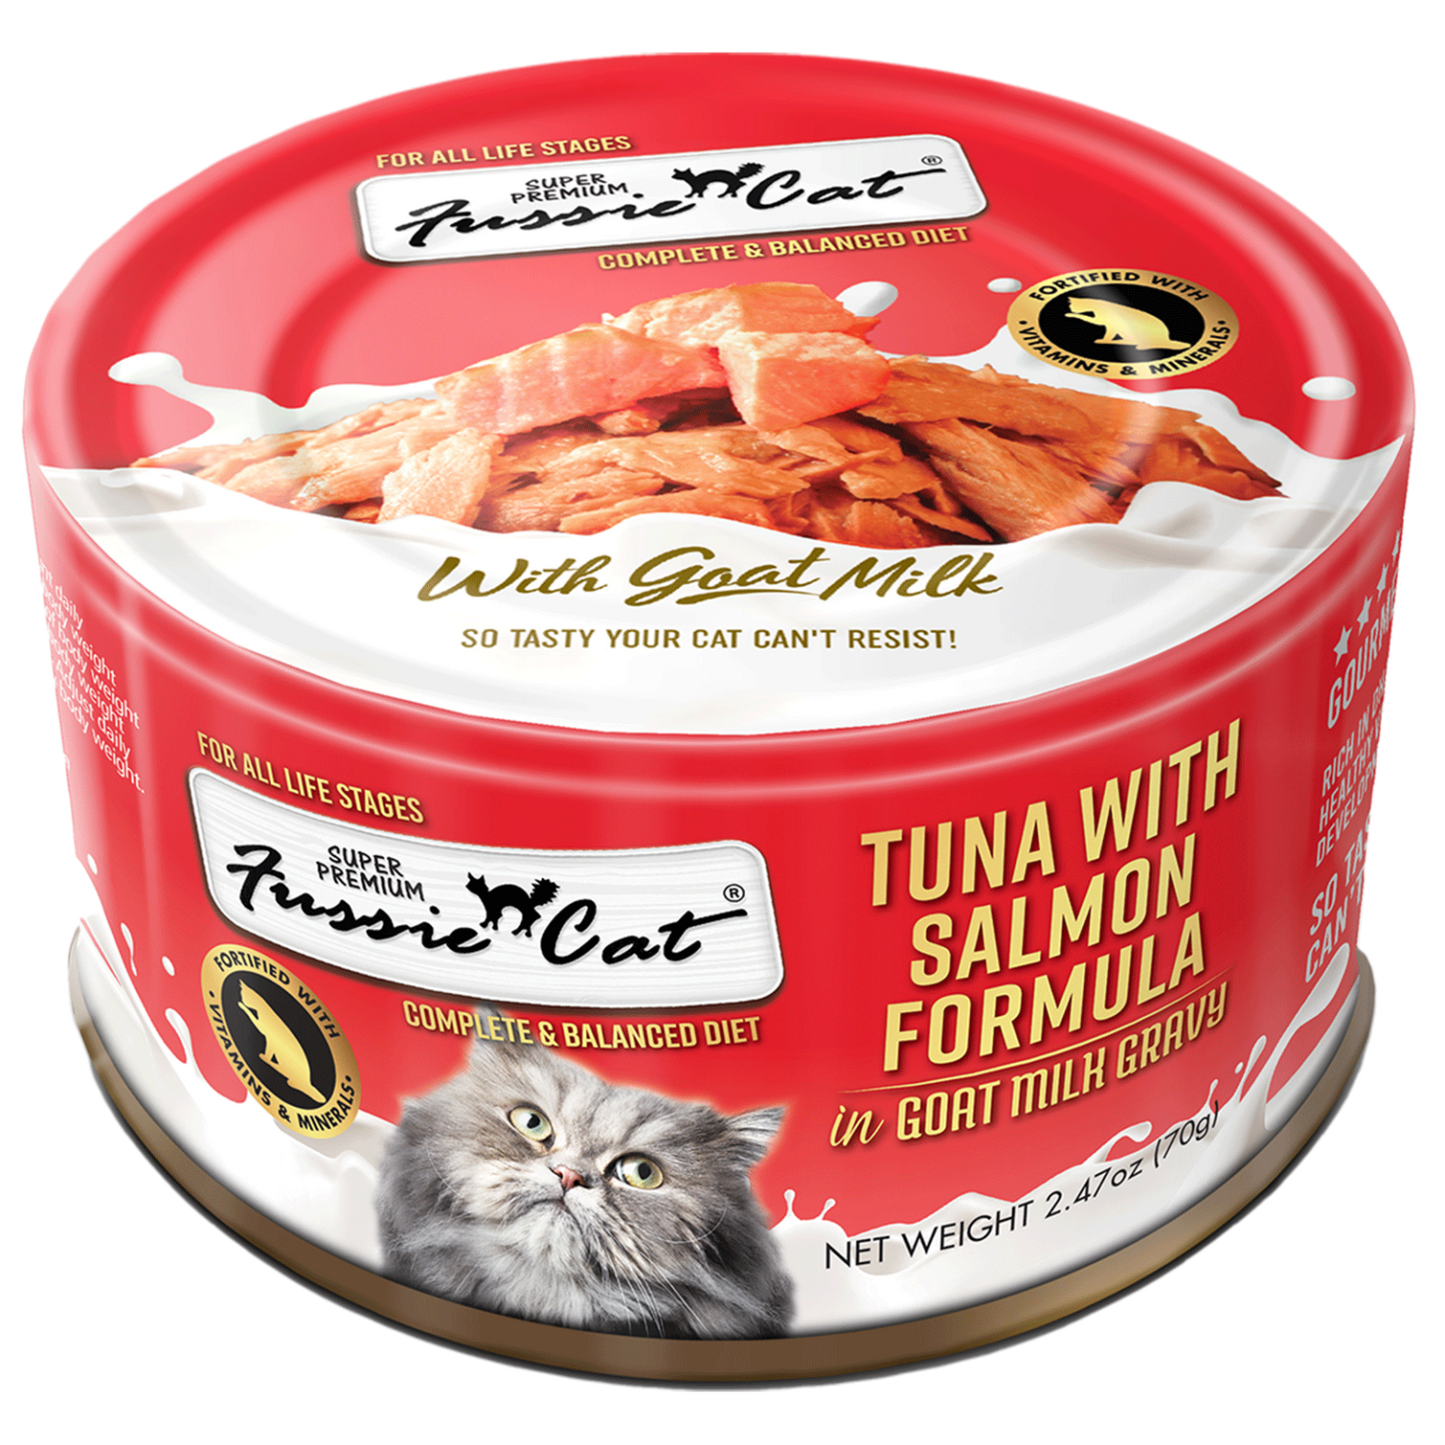 Fussie Cat Super Premium Tuna with Salmon in Goat Milk Gravy